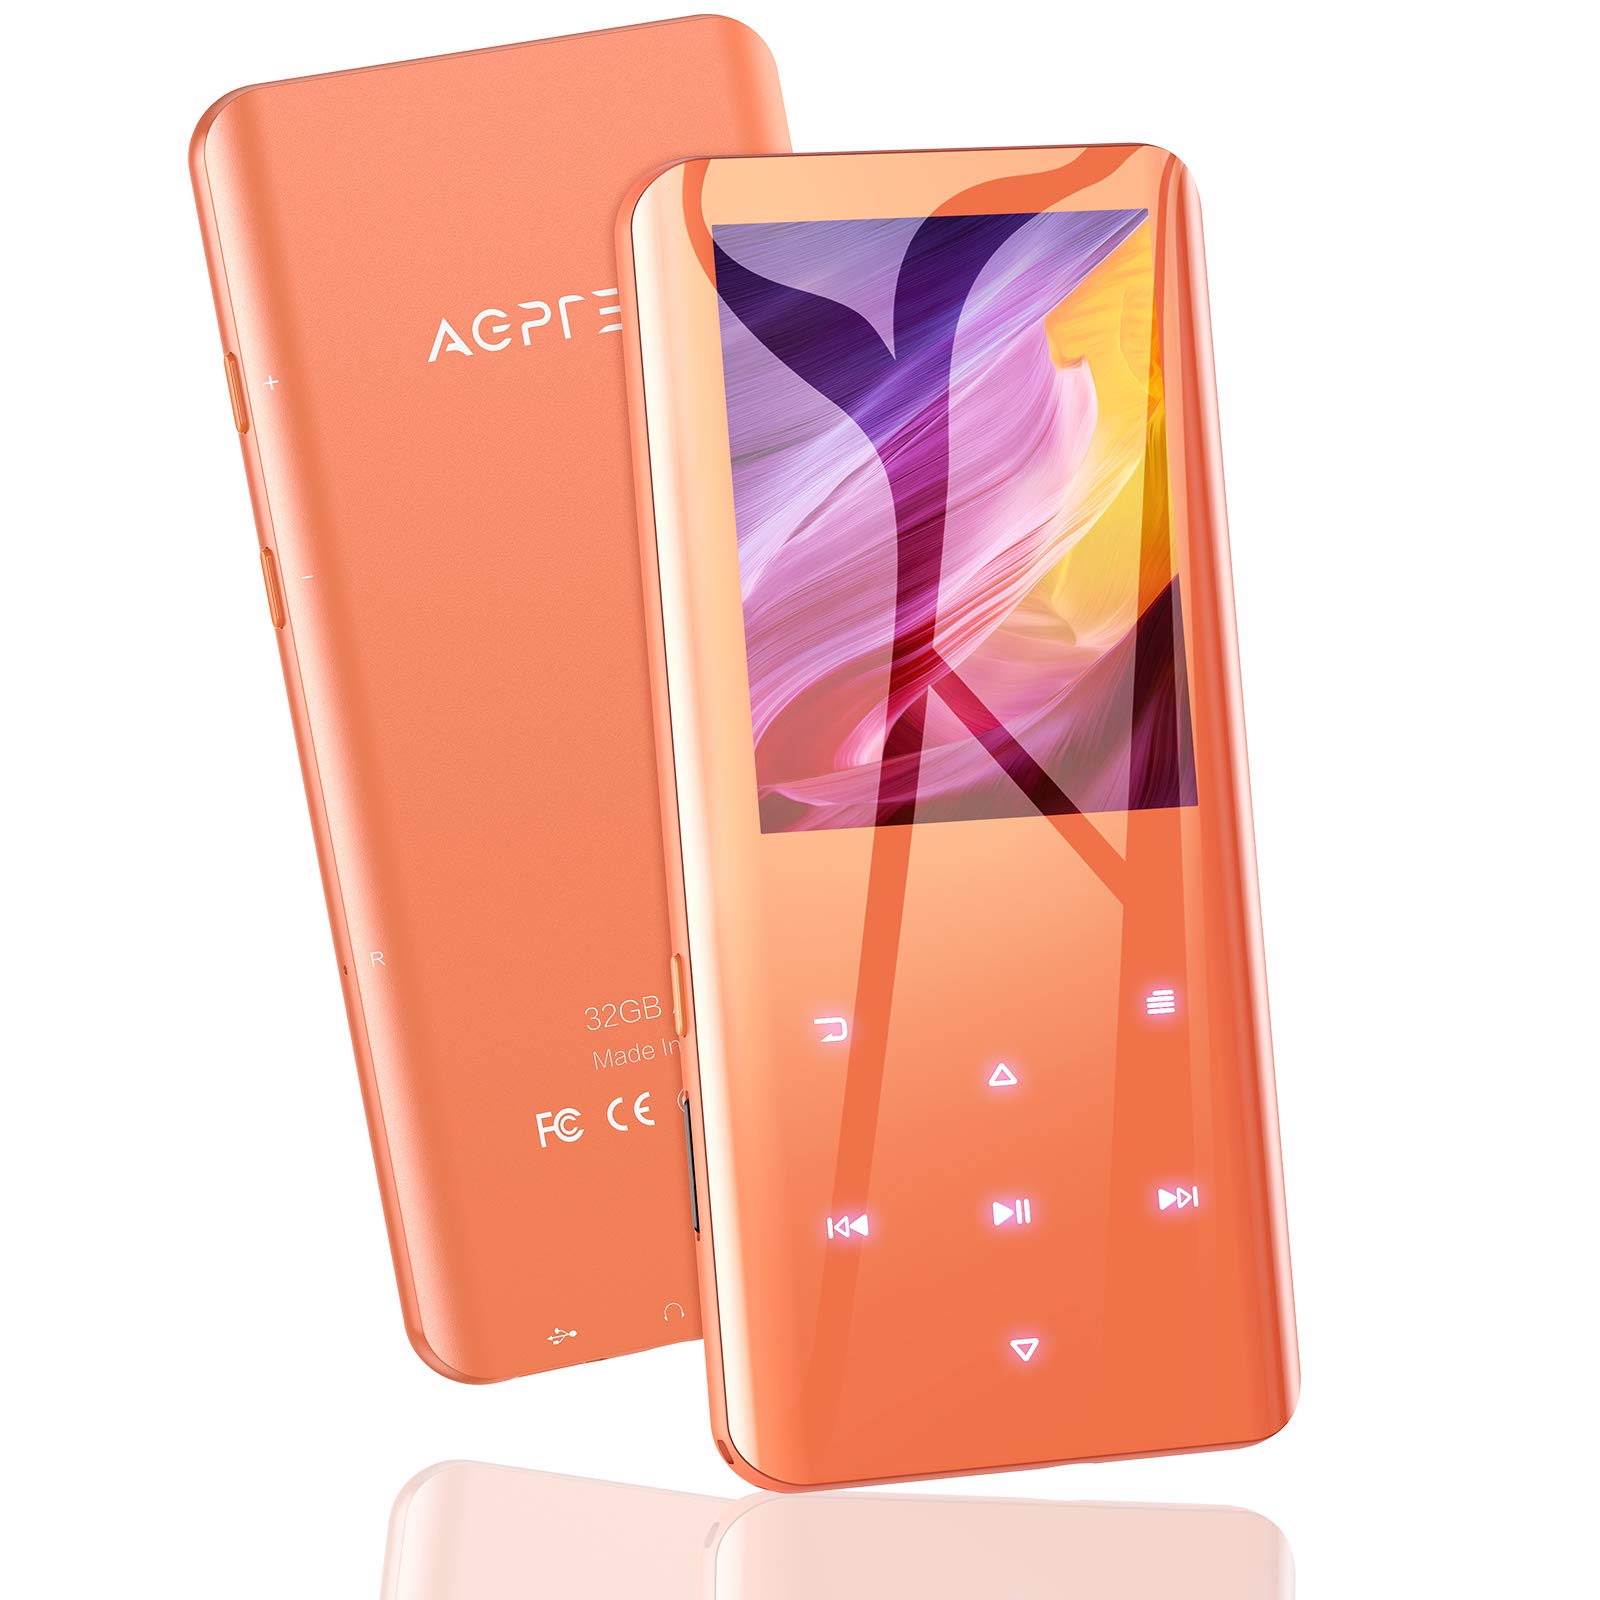 AGPTEK MP3プレーヤー AGPTEK MP3プレーヤー Bluetooth5.2 32GB内蔵 mp3プレイヤー 3D曲面 音楽プレーヤー スピーカー内蔵 HIFI 2.4インチ大画面 超軽量 FMラジオ 録音 最大128GBまで拡張可能 日本語説明書付き オレンジ ギフト プレゼント